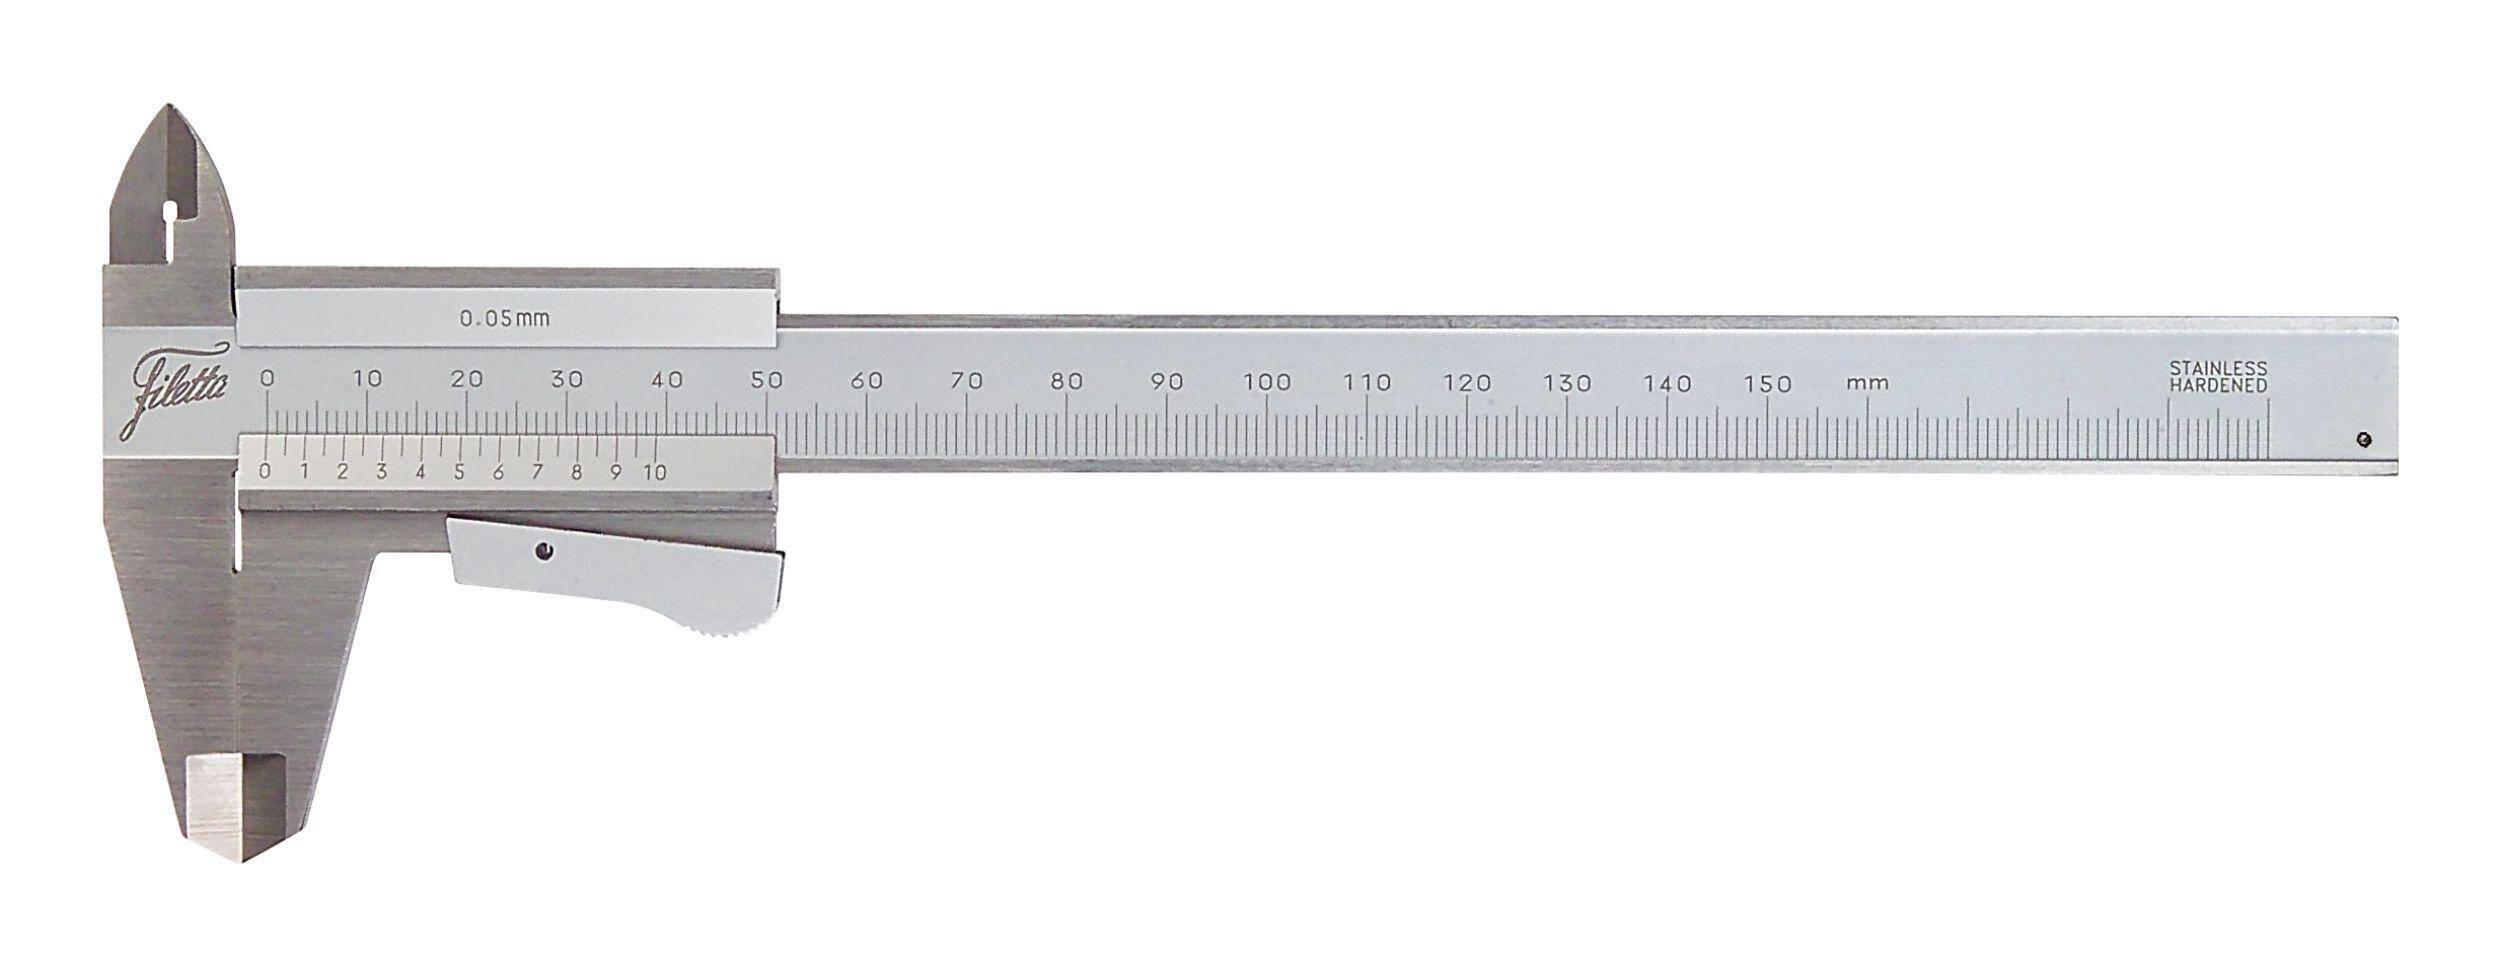 SCHUT suwmiarka analogowa 150/0.05 mm z zaciskiem + świadectwo wzorcowania 909.525 WZORC (Zdjęcie 3)